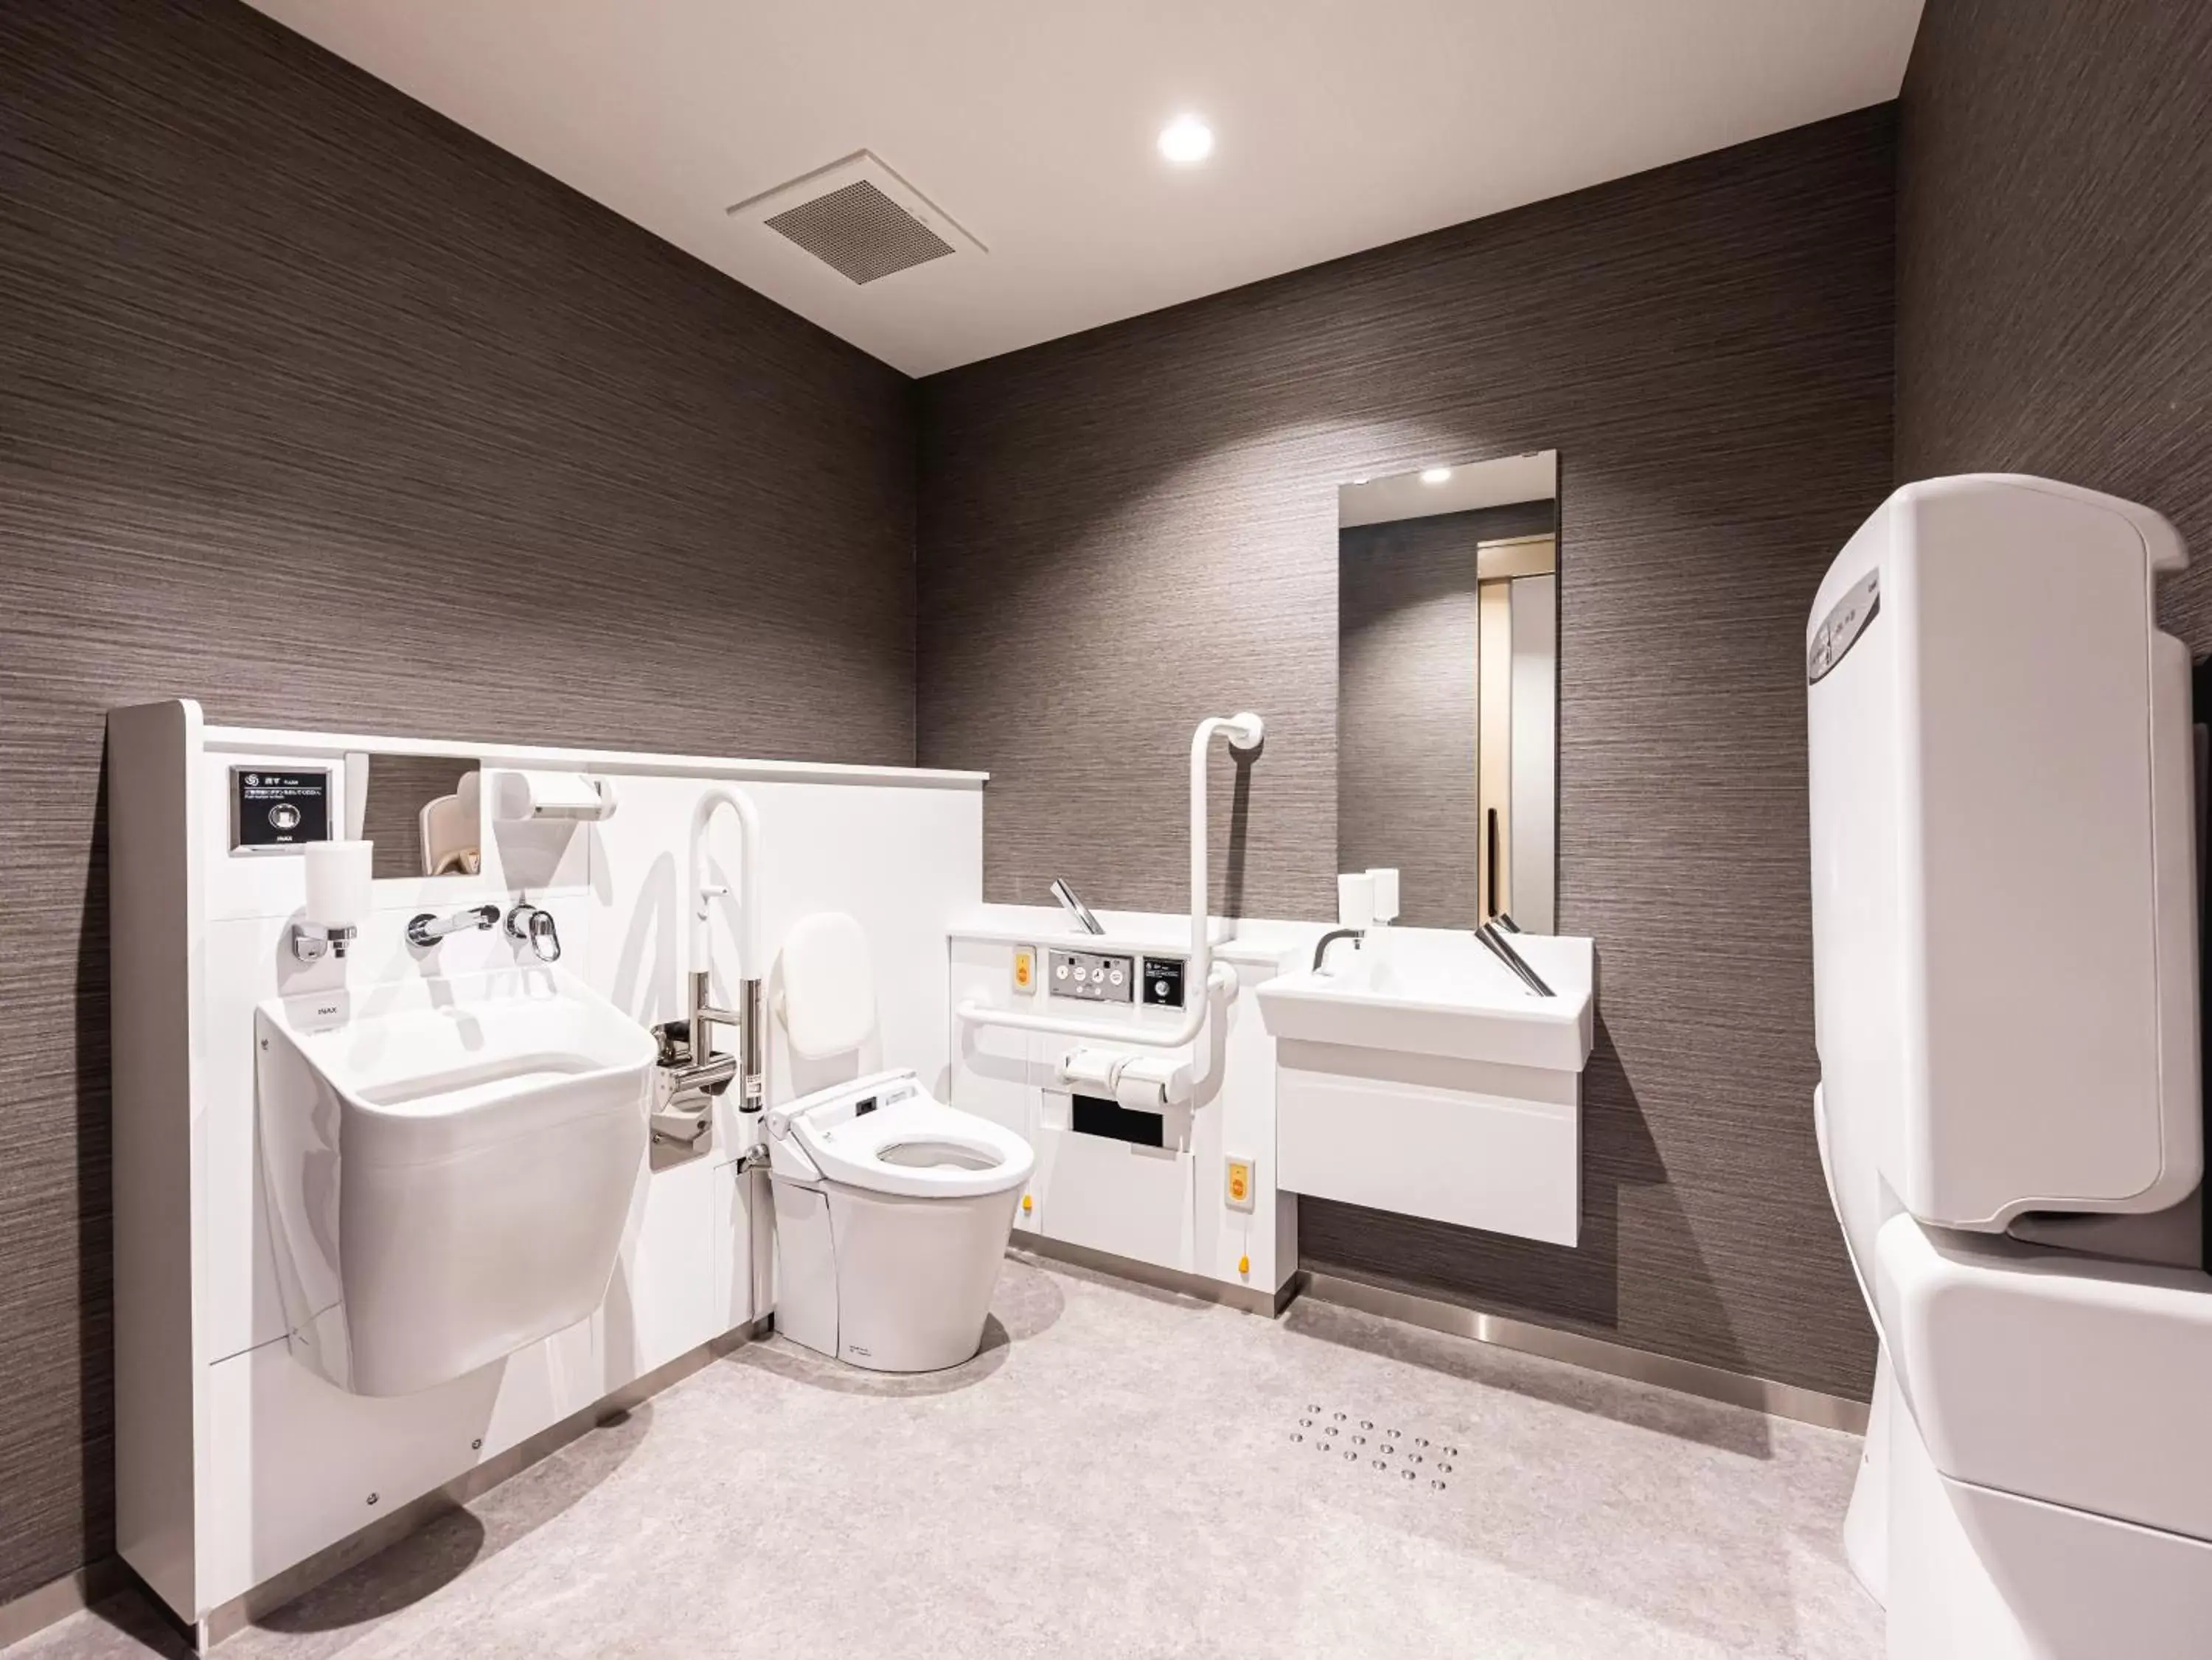 Area and facilities, Bathroom in La'gent Hotel Kyoto Nijo